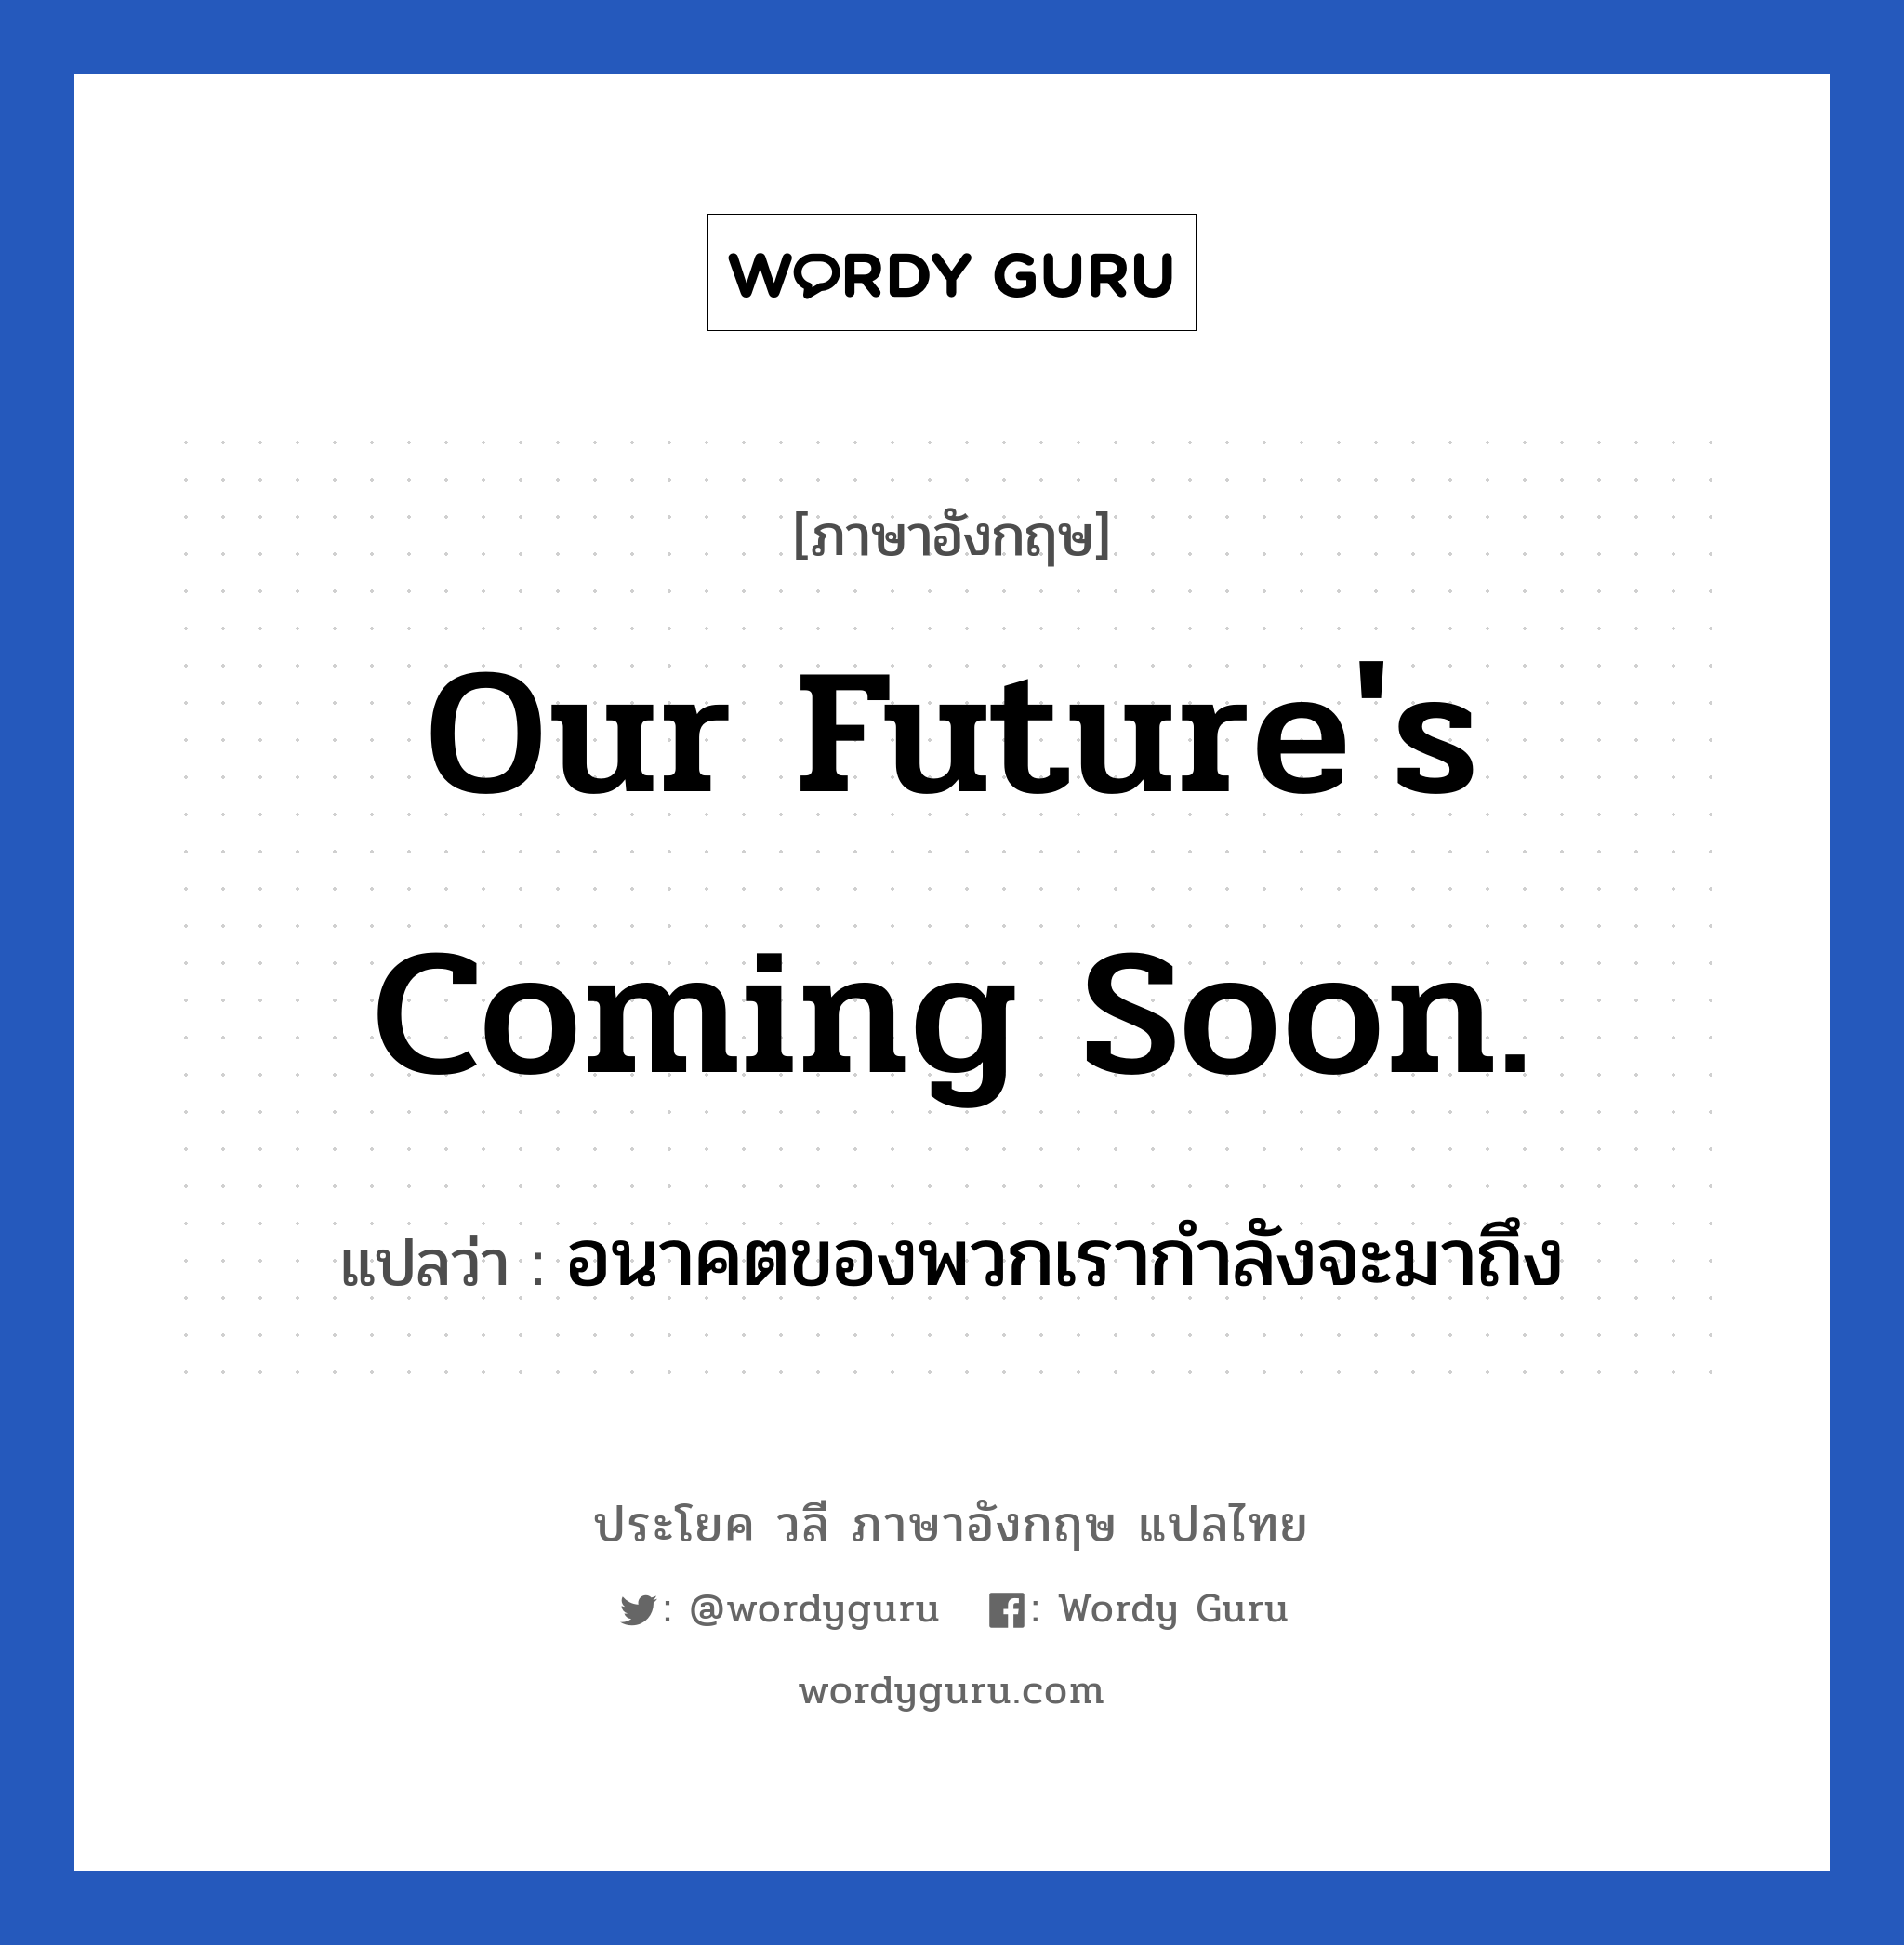 Our future's coming soon. แปลว่า?, วลีภาษาอังกฤษ Our future's coming soon. แปลว่า อนาคตของพวกเรากำลังจะมาถึง